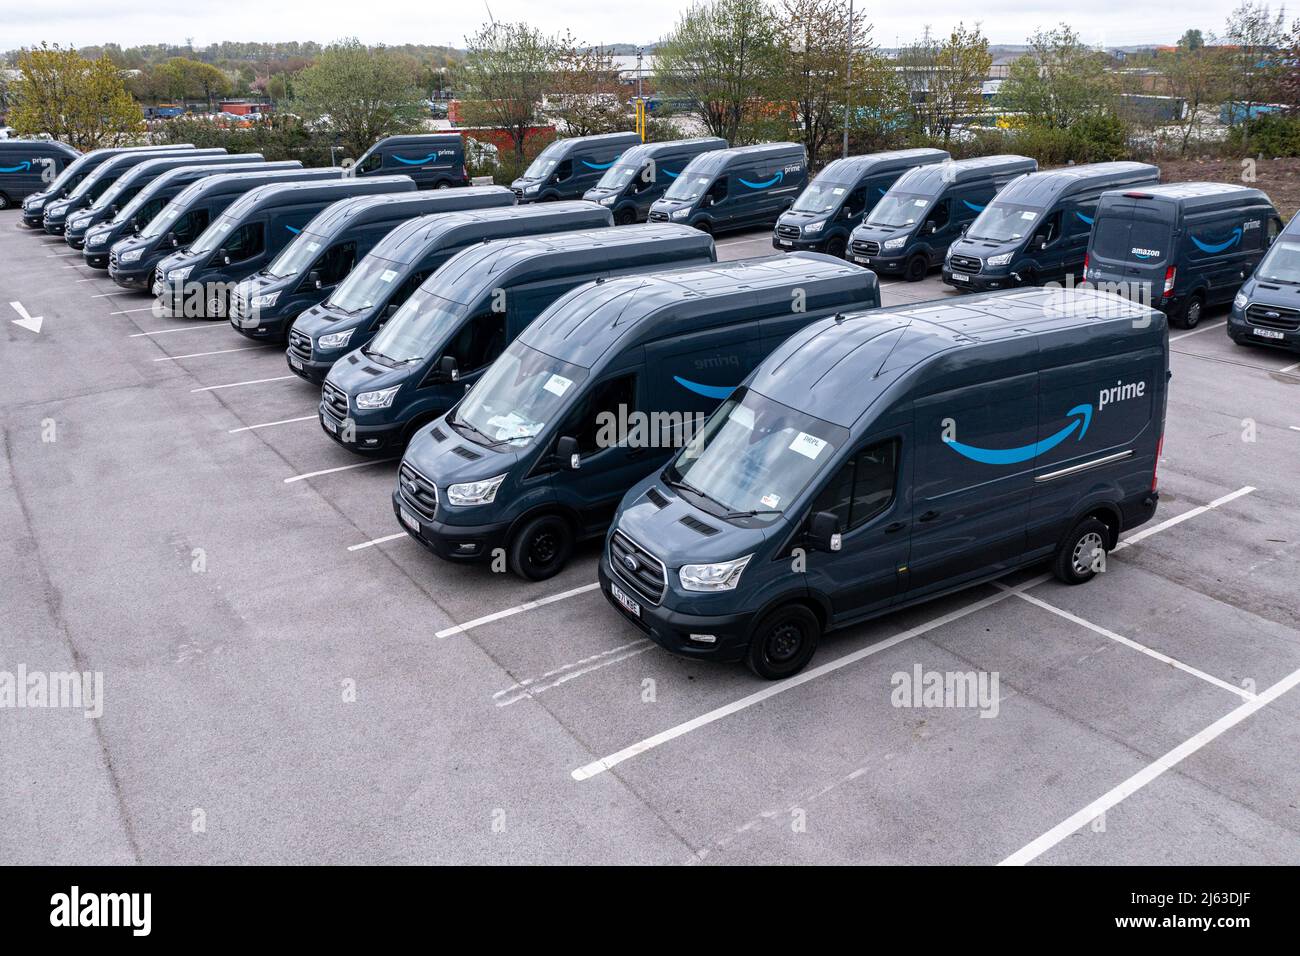 LEEDS, ROYAUME-UNI - 25 AVRIL 2022. Une flotte de fourgonnettes de livraison Amazon Prime Ford Transit prêtes à être chargées pour livrer des articles de magasinage en ligne aux maisons au Royaume-Uni Banque D'Images